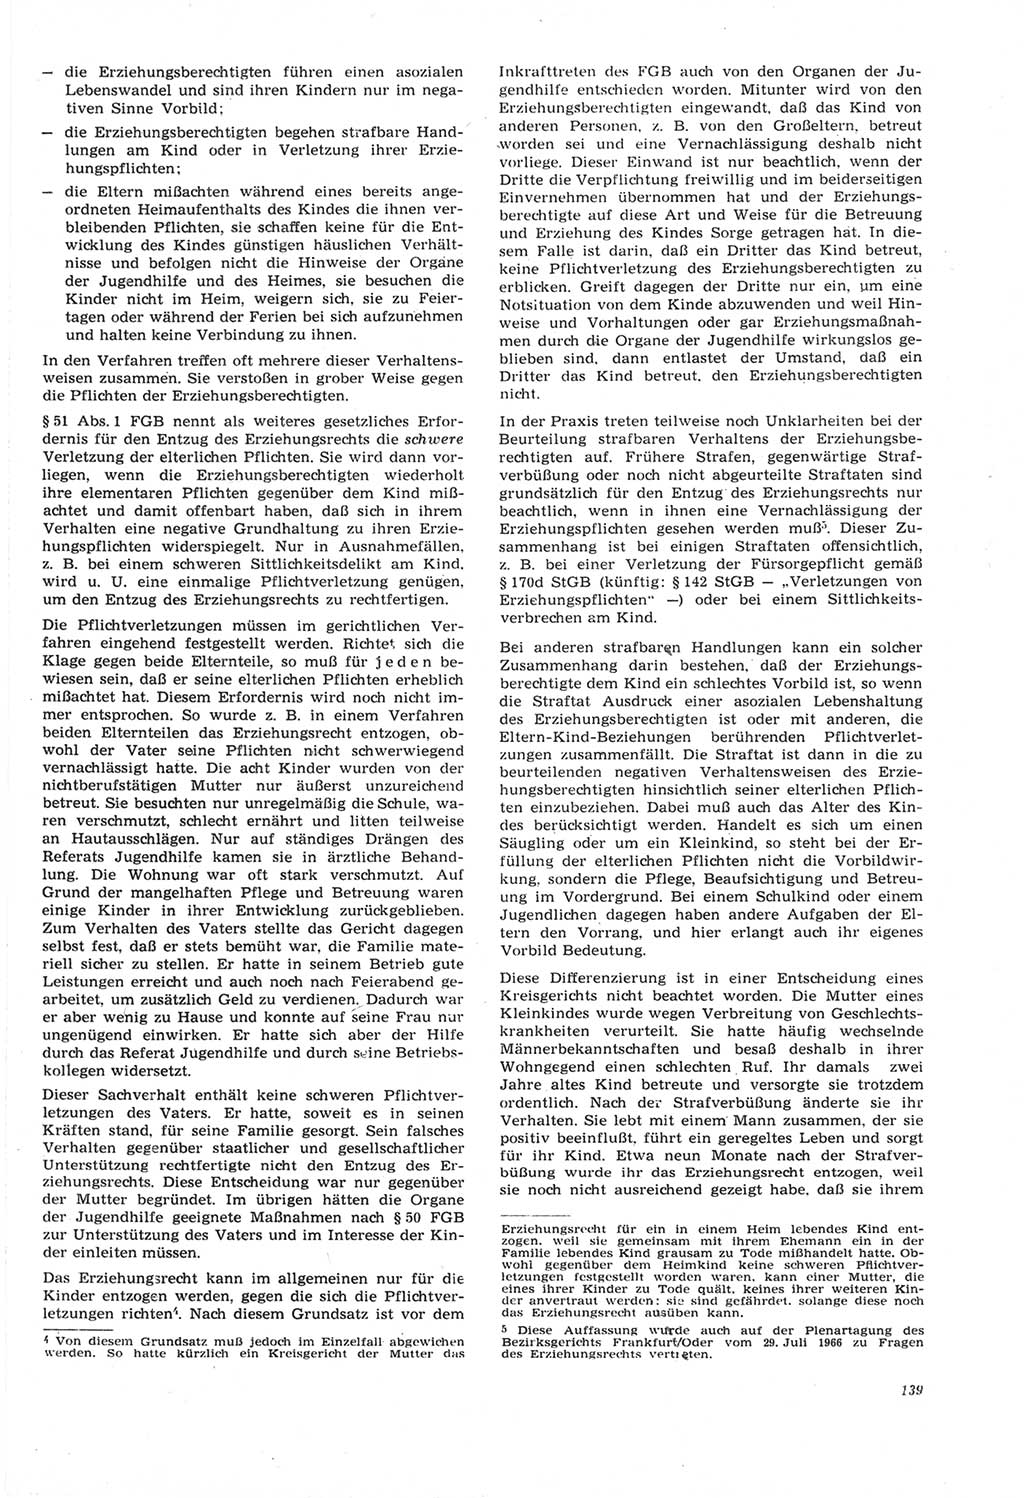 Neue Justiz (NJ), Zeitschrift für Recht und Rechtswissenschaft [Deutsche Demokratische Republik (DDR)], 22. Jahrgang 1968, Seite 139 (NJ DDR 1968, S. 139)